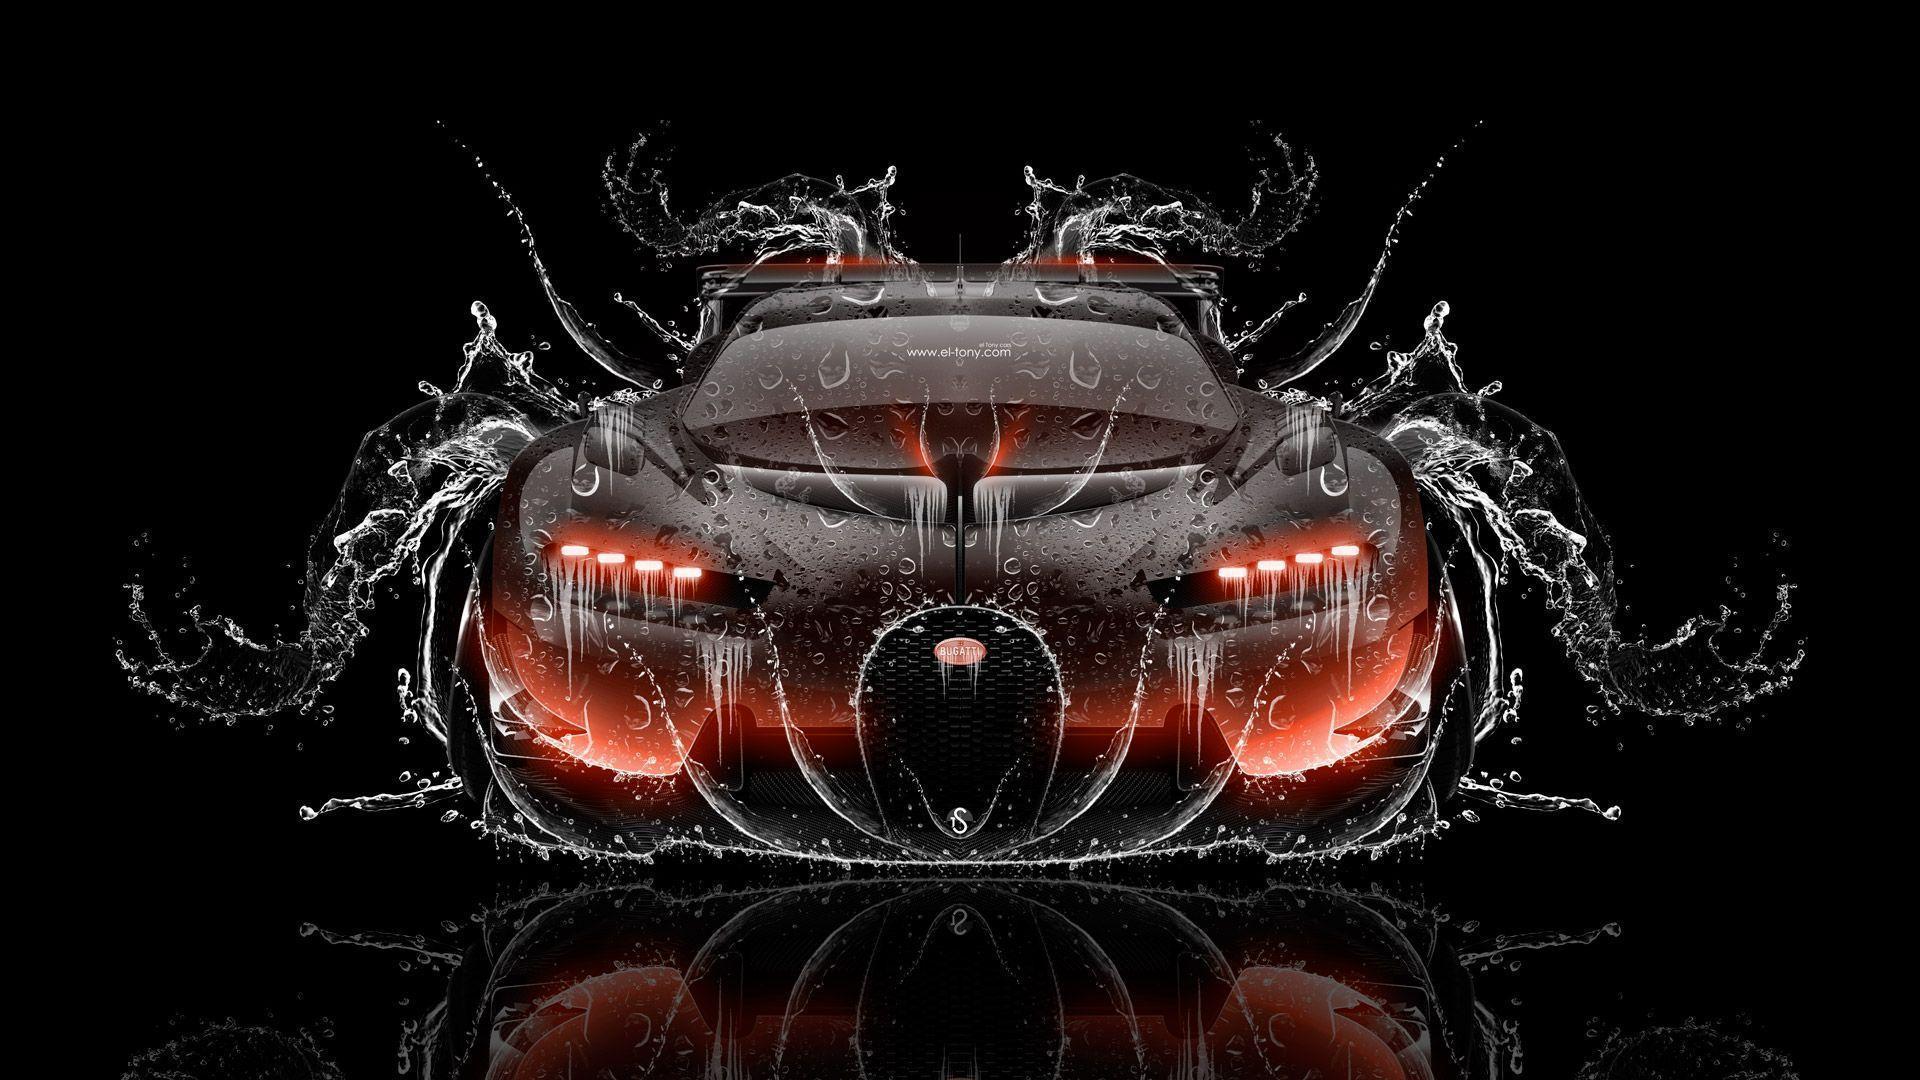 Bugatti Vision Gran Turismo FrontUp Super Water Car 2016 « el Tony